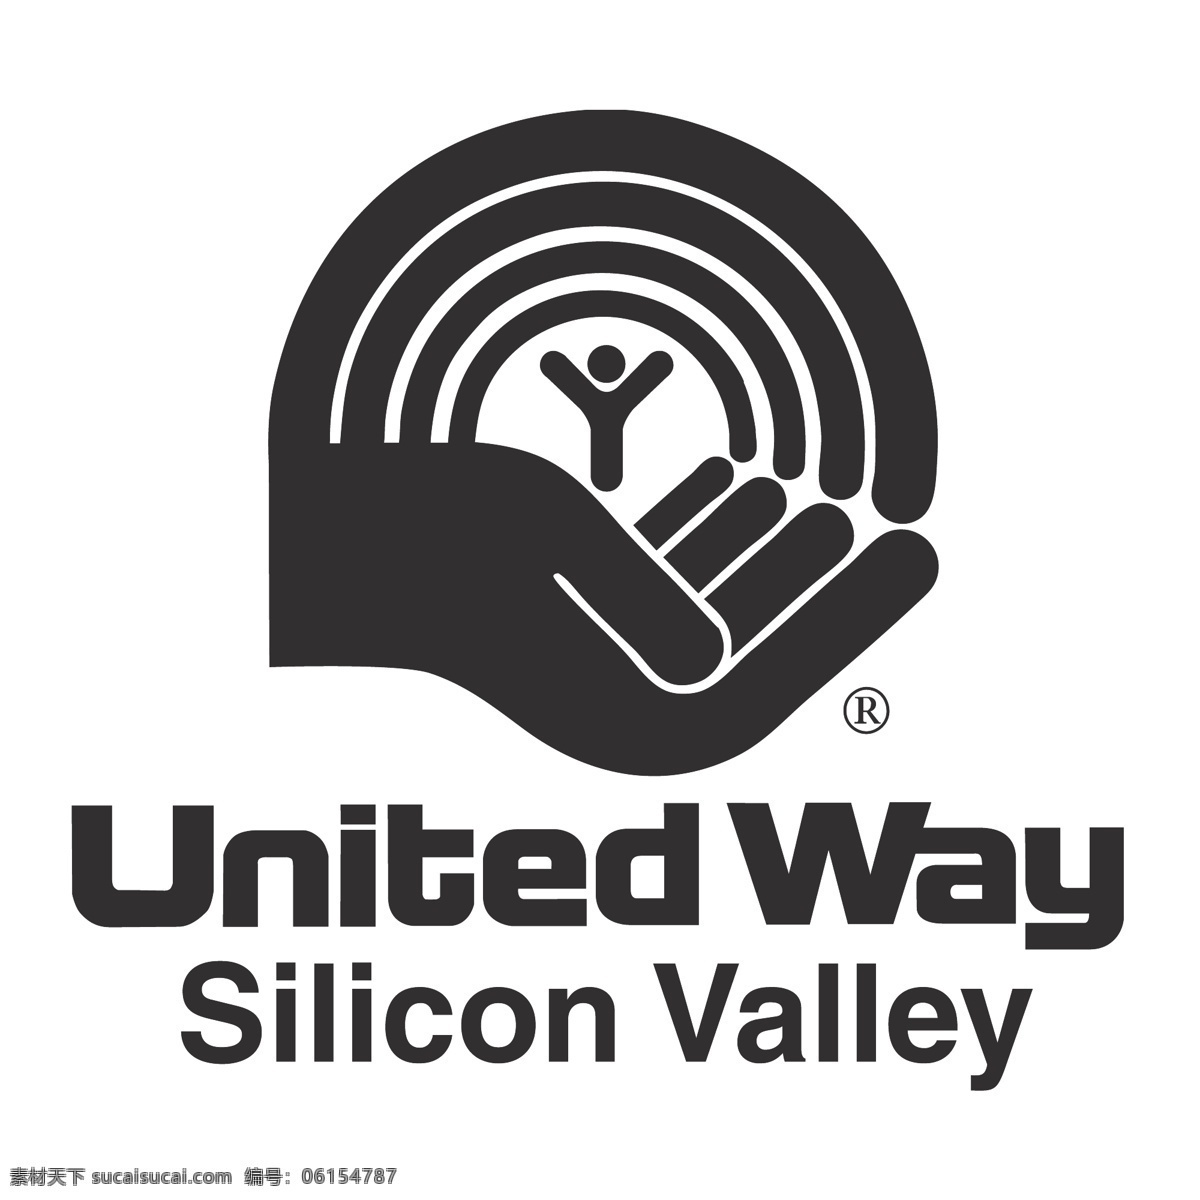 硅谷联合之路 硅谷 标志 自由 联合 方式 之路 白色